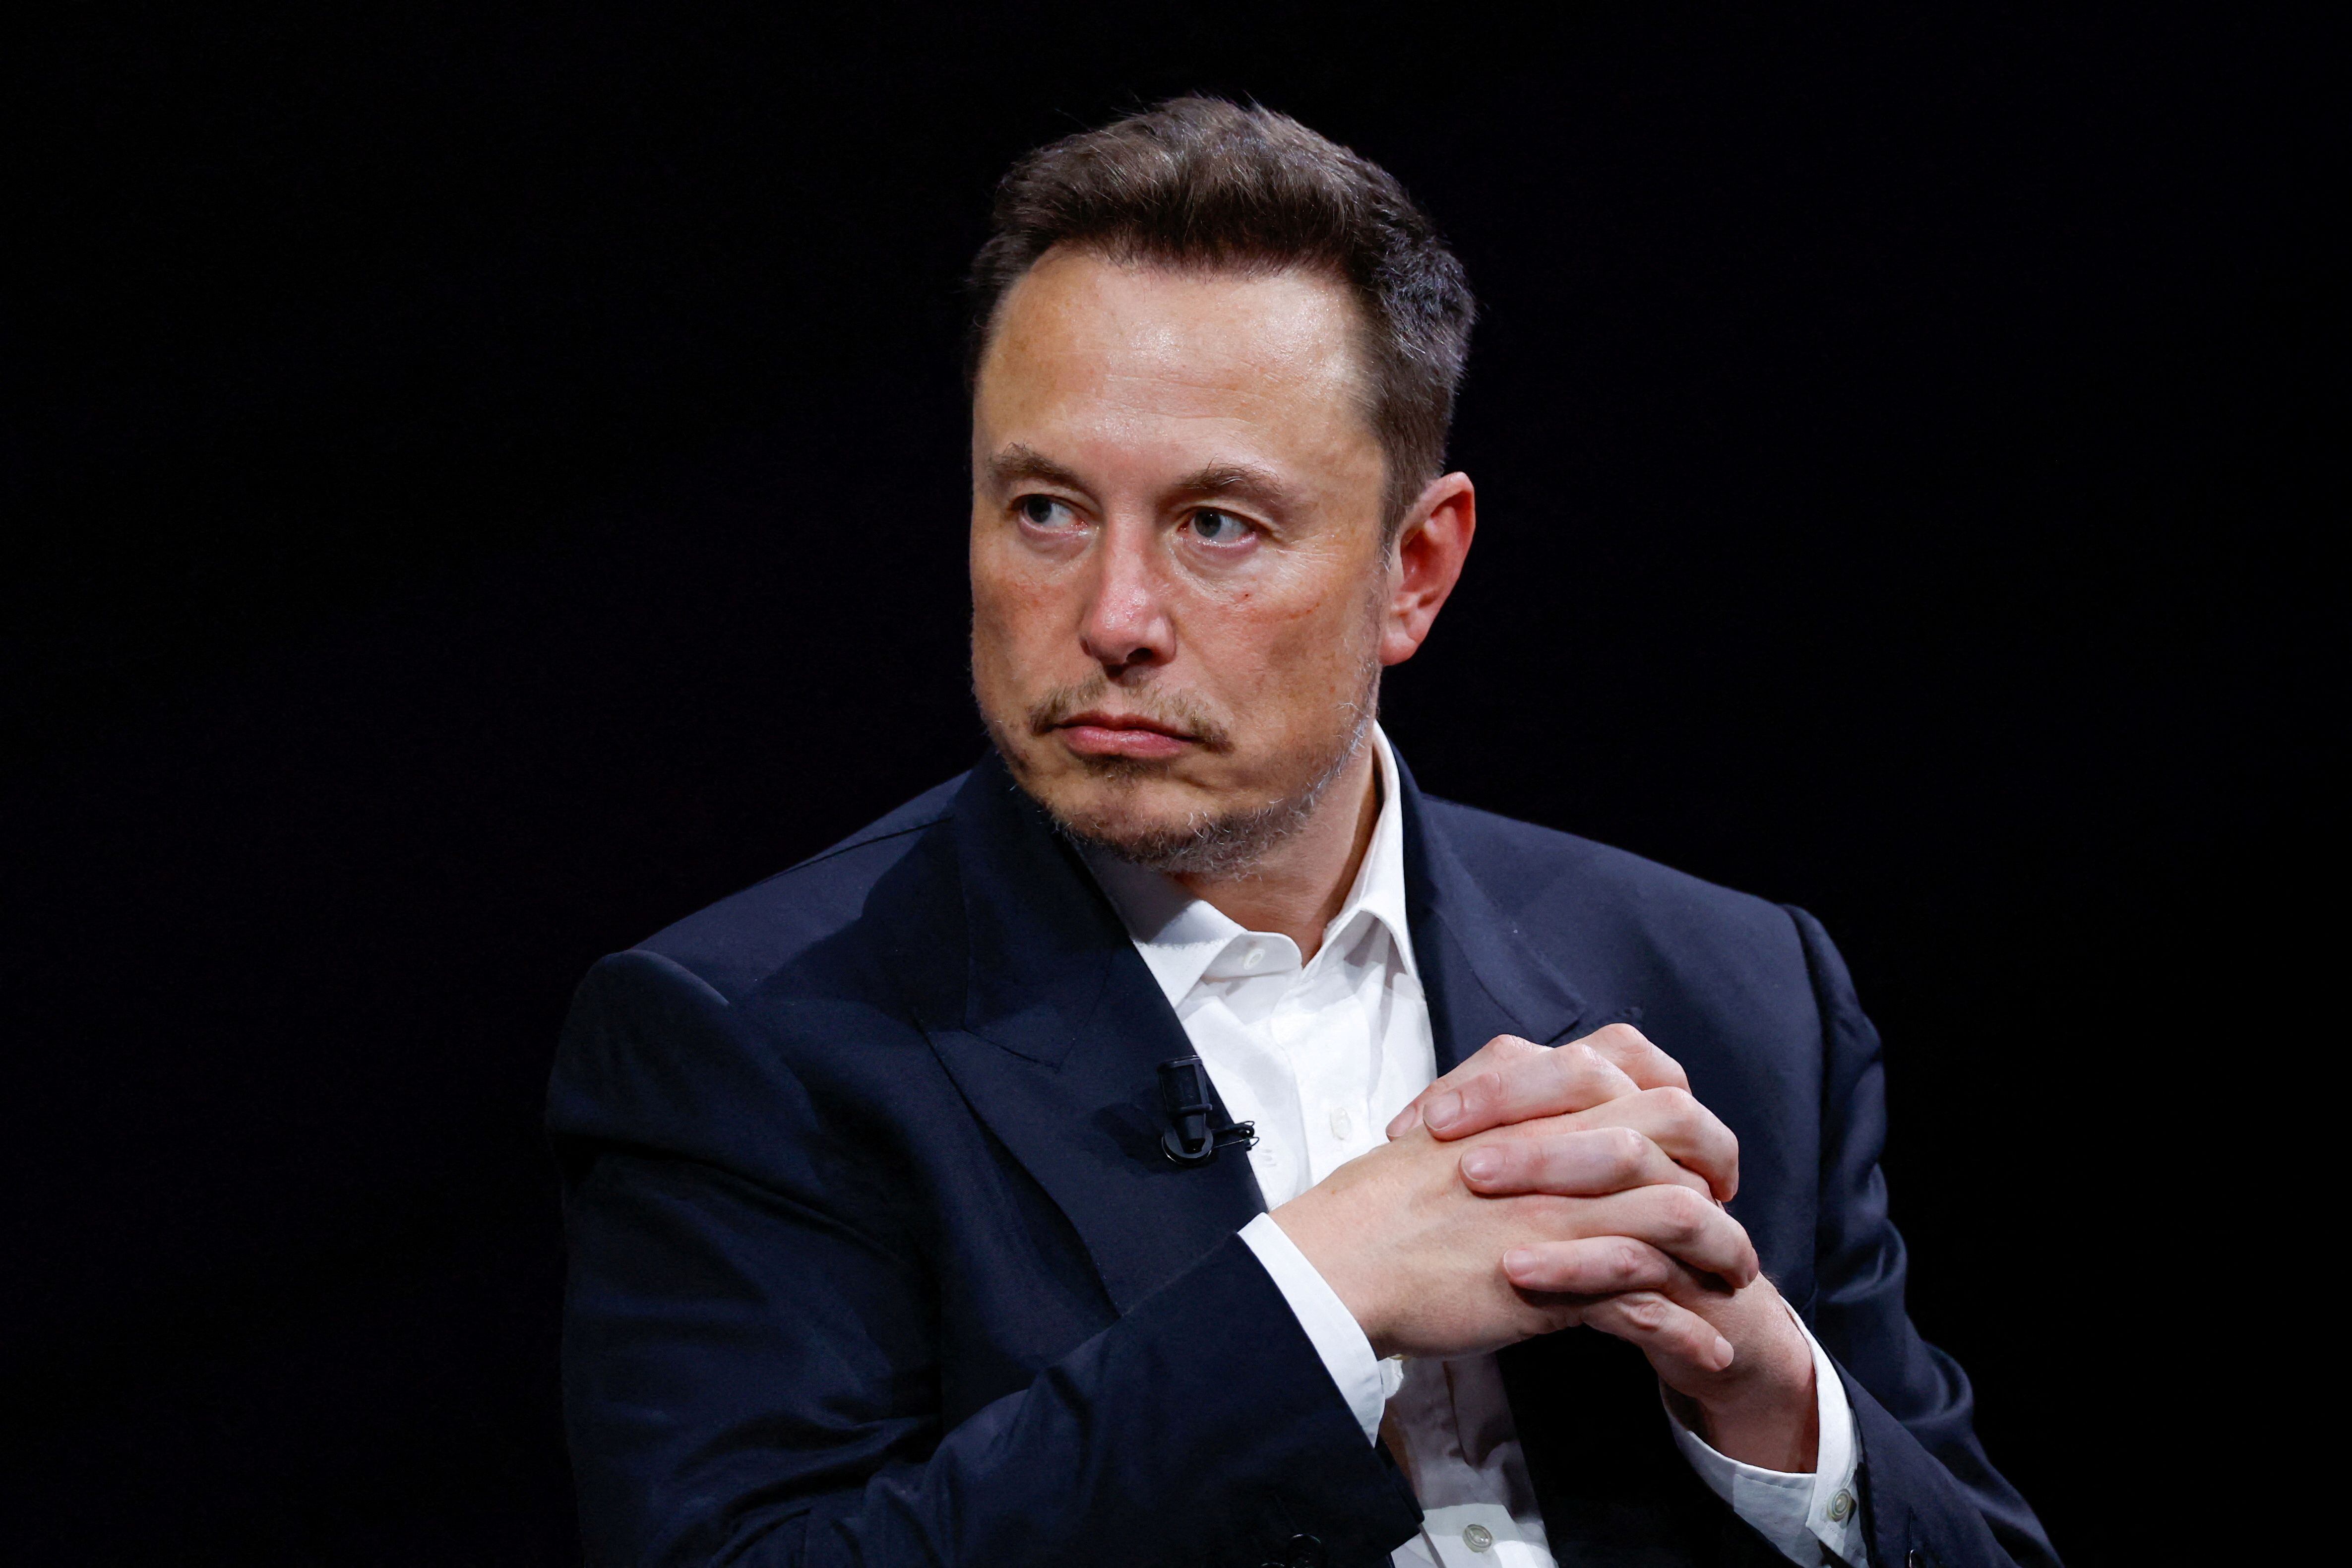 Elon Musk dijo que el próximo problema será la falta de electricidad, y que el poblema llegaría ya en 2025. REUTERS/Gonzalo Fuentes/File Photo